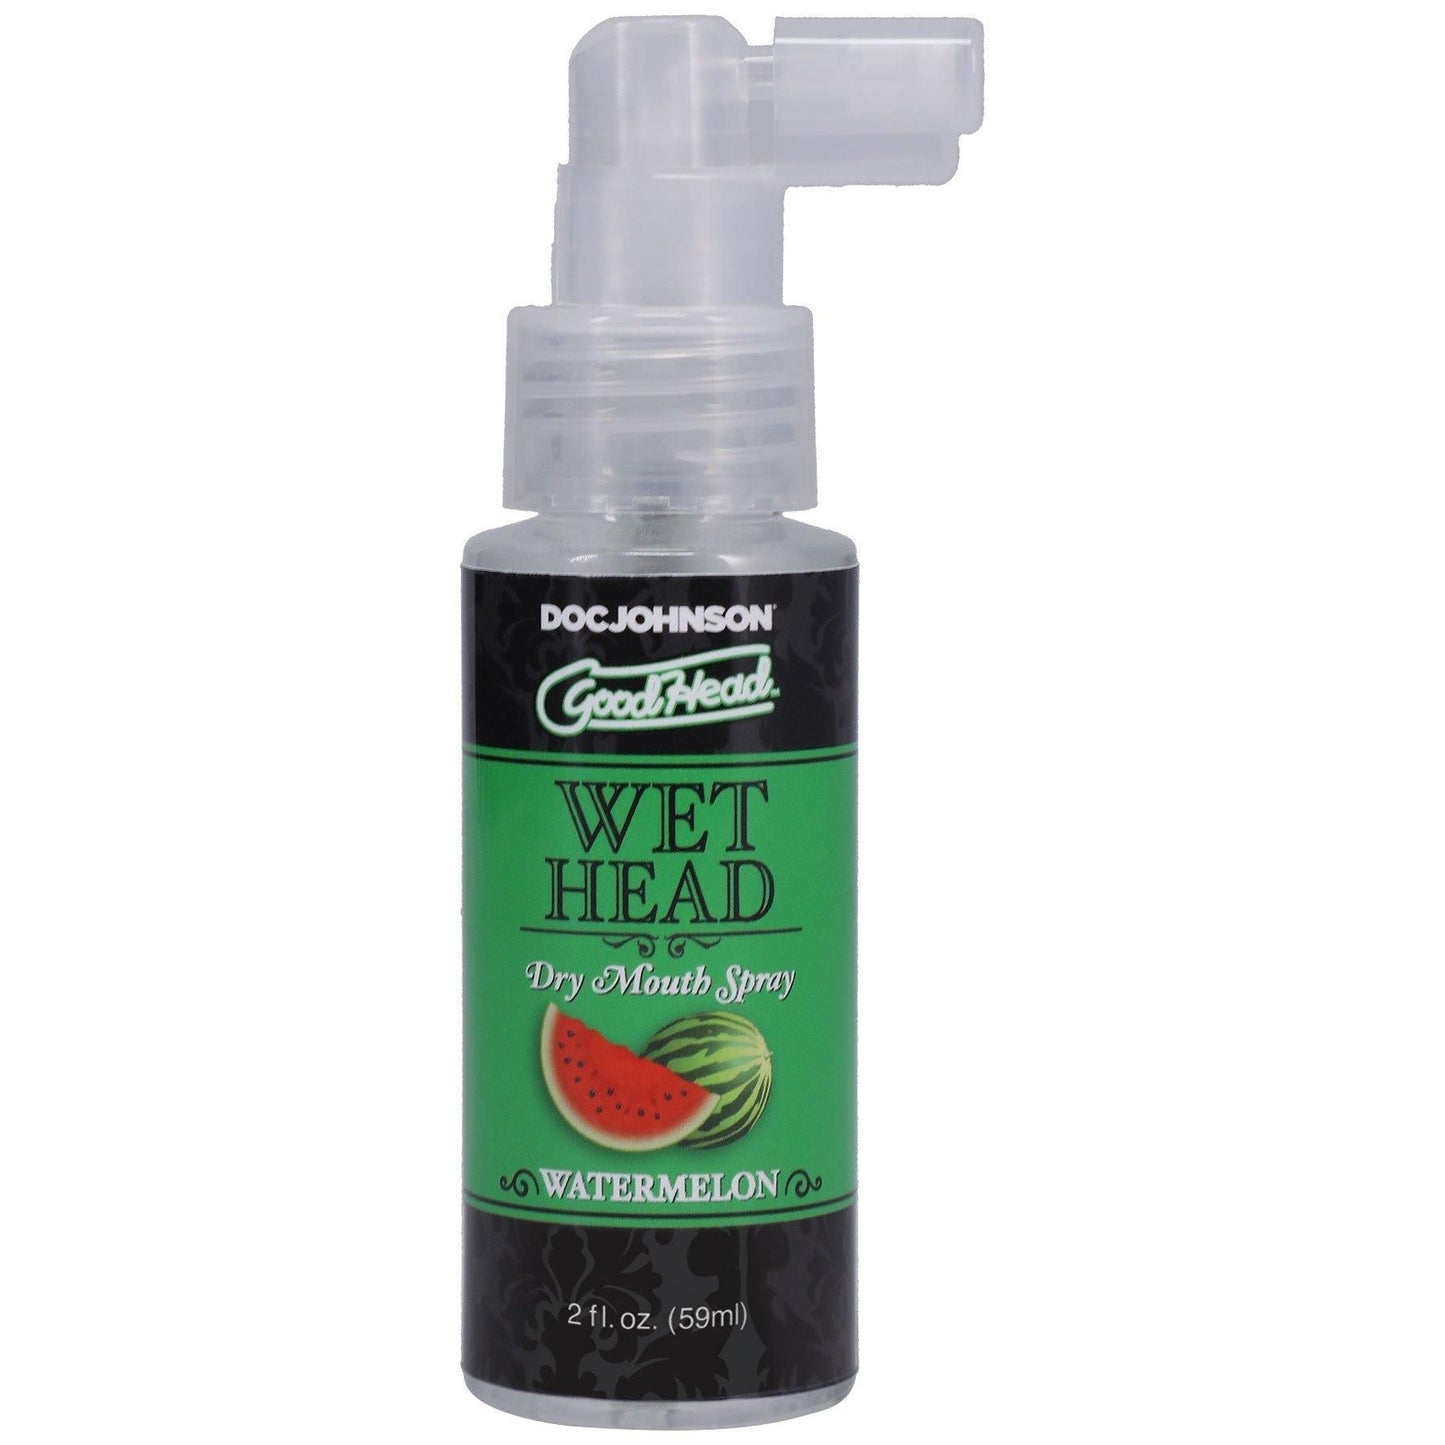 Goodhead - Wet Head - Dry Mouth Spray - Watermelon - 2 Fl. Oz. - My Sex Toy Hub